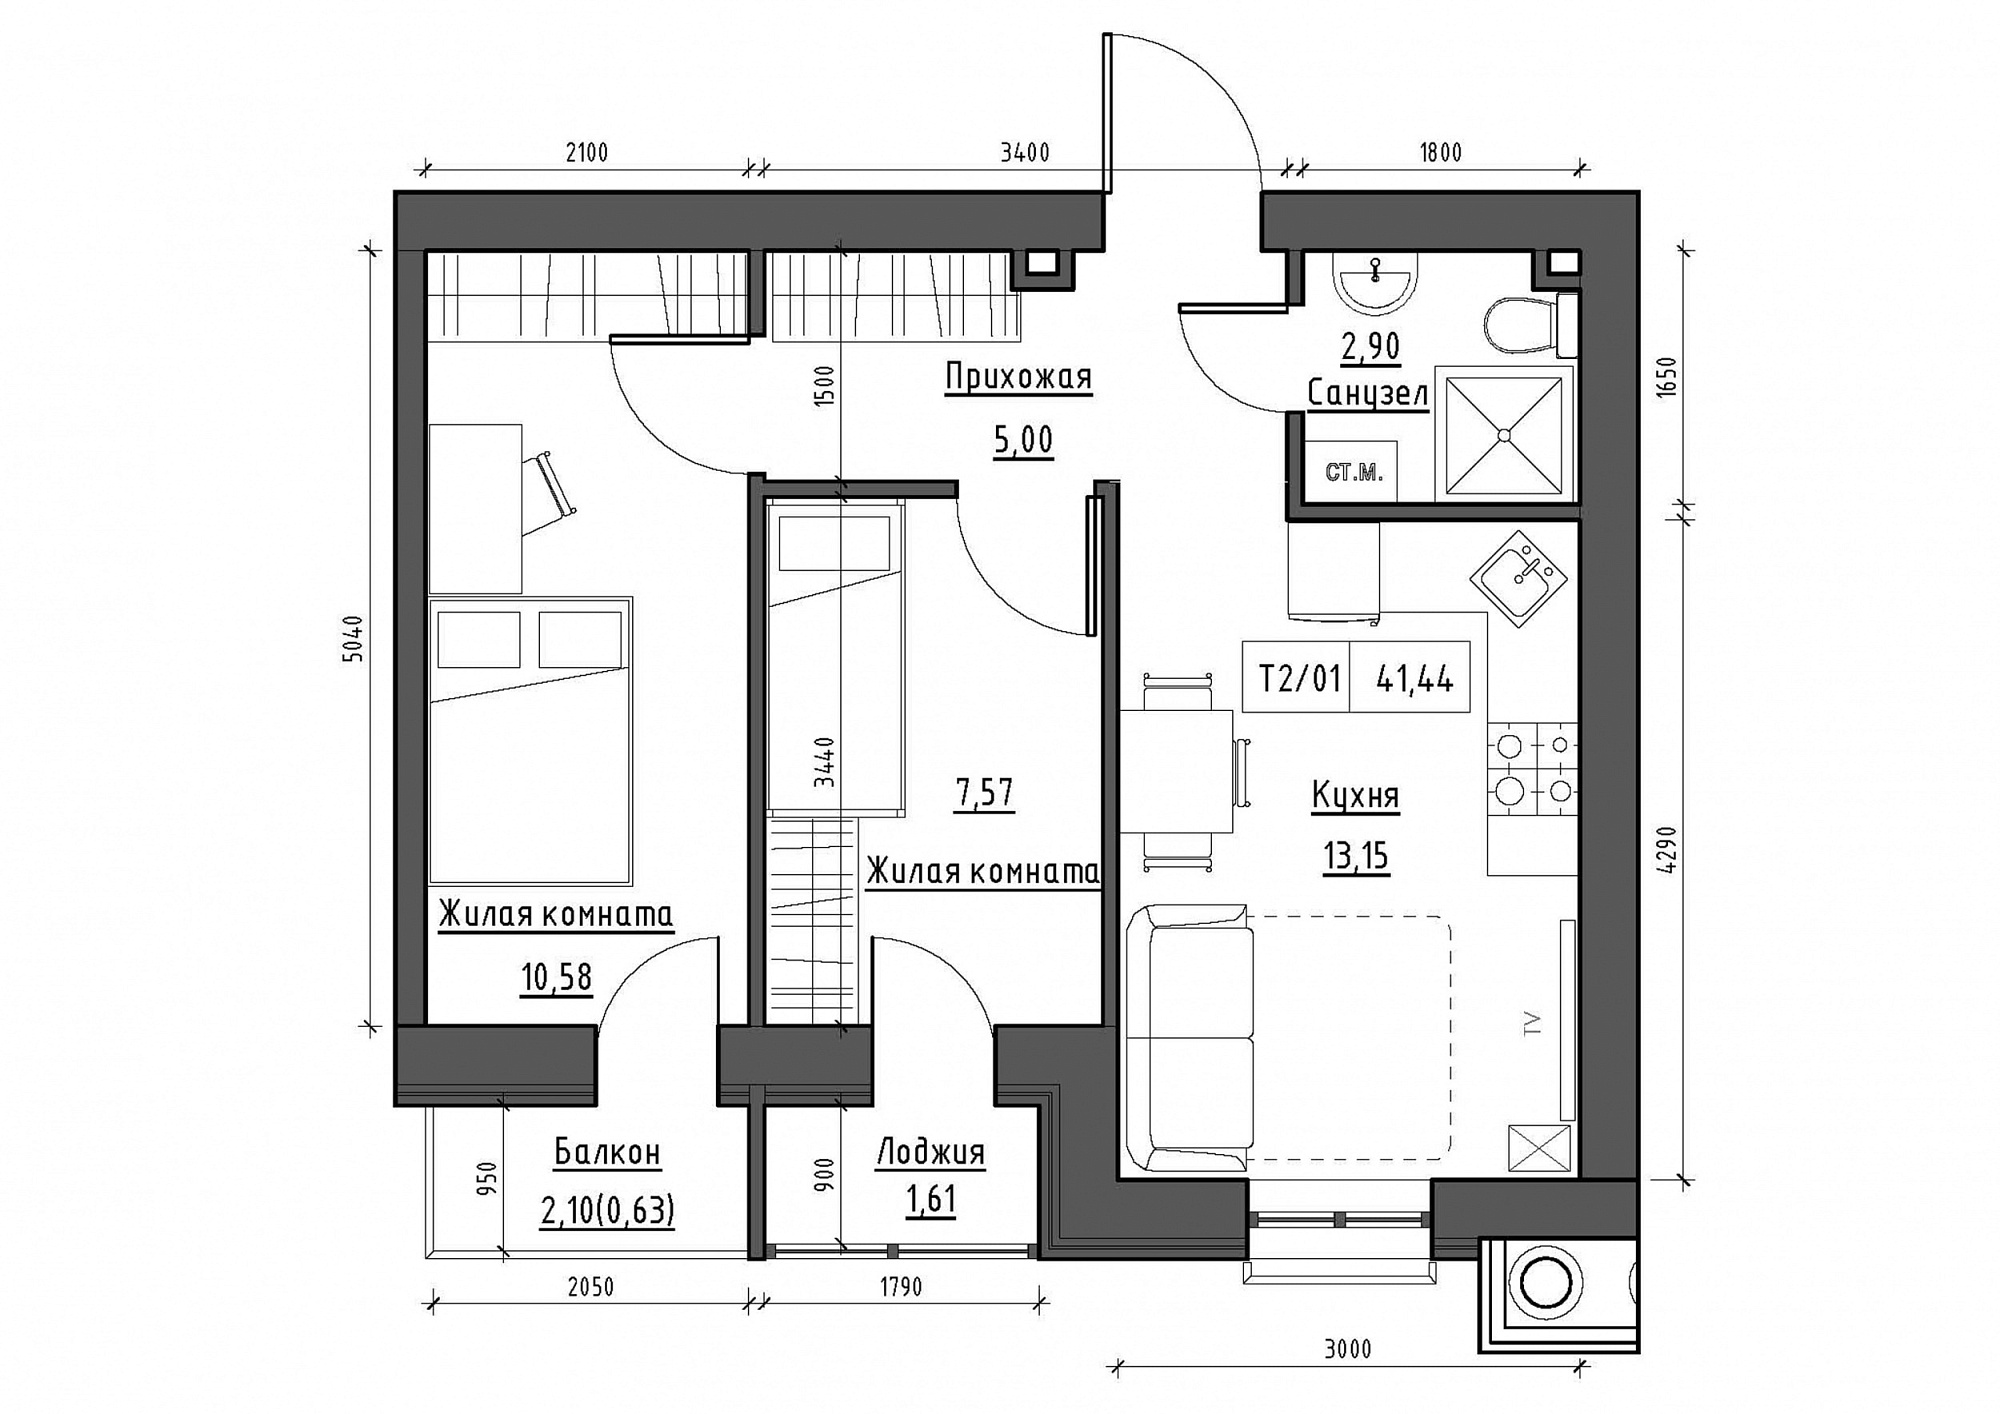 Планування 2-к квартира площею 41.44м2, KS-011-03/0011.